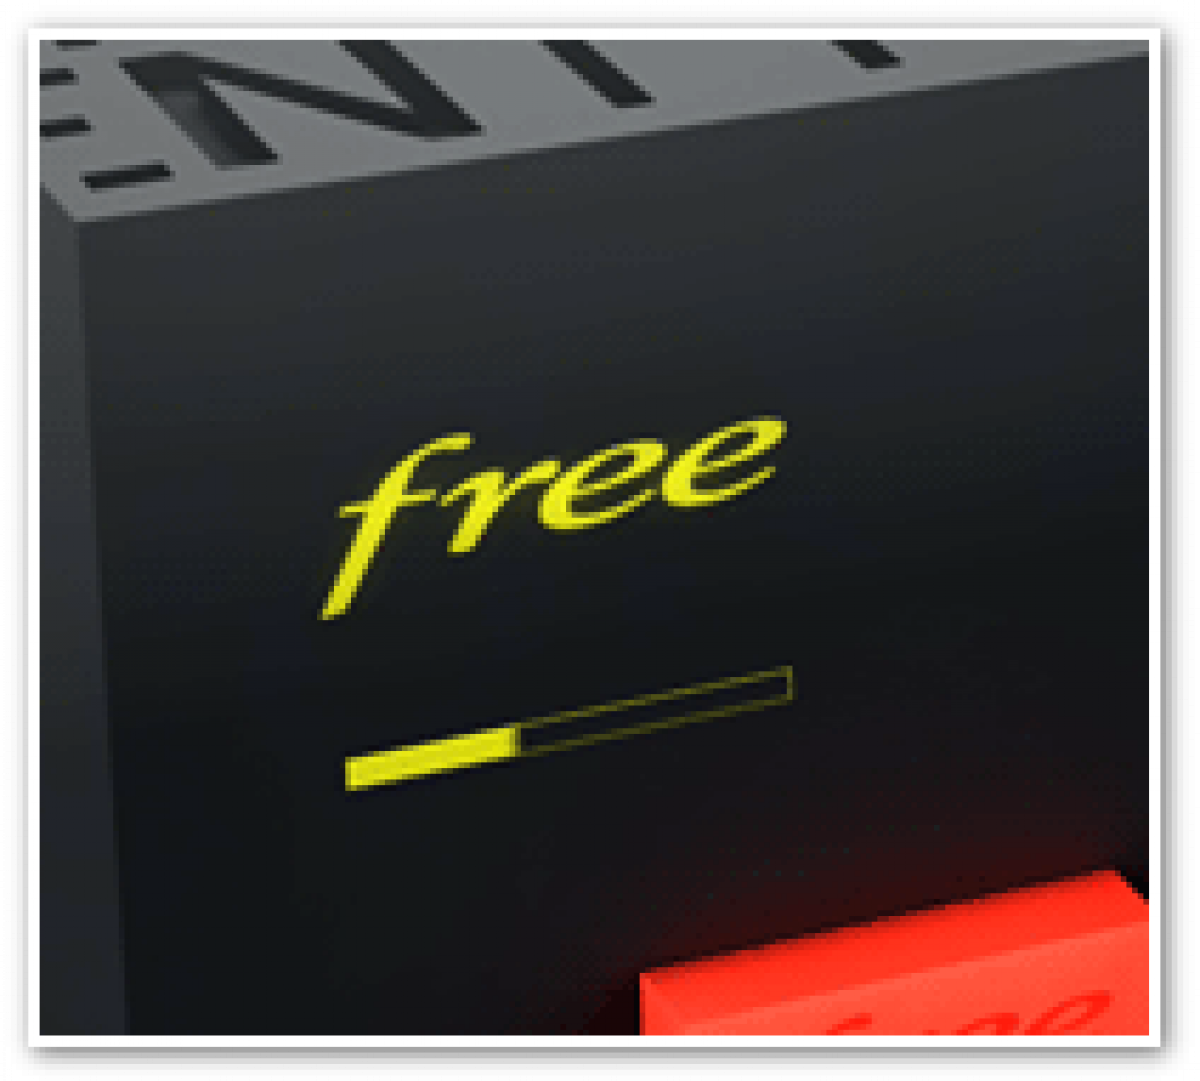 Le VDSL2 dès cet automne en France, la Freebox Revolution déjà compatible !